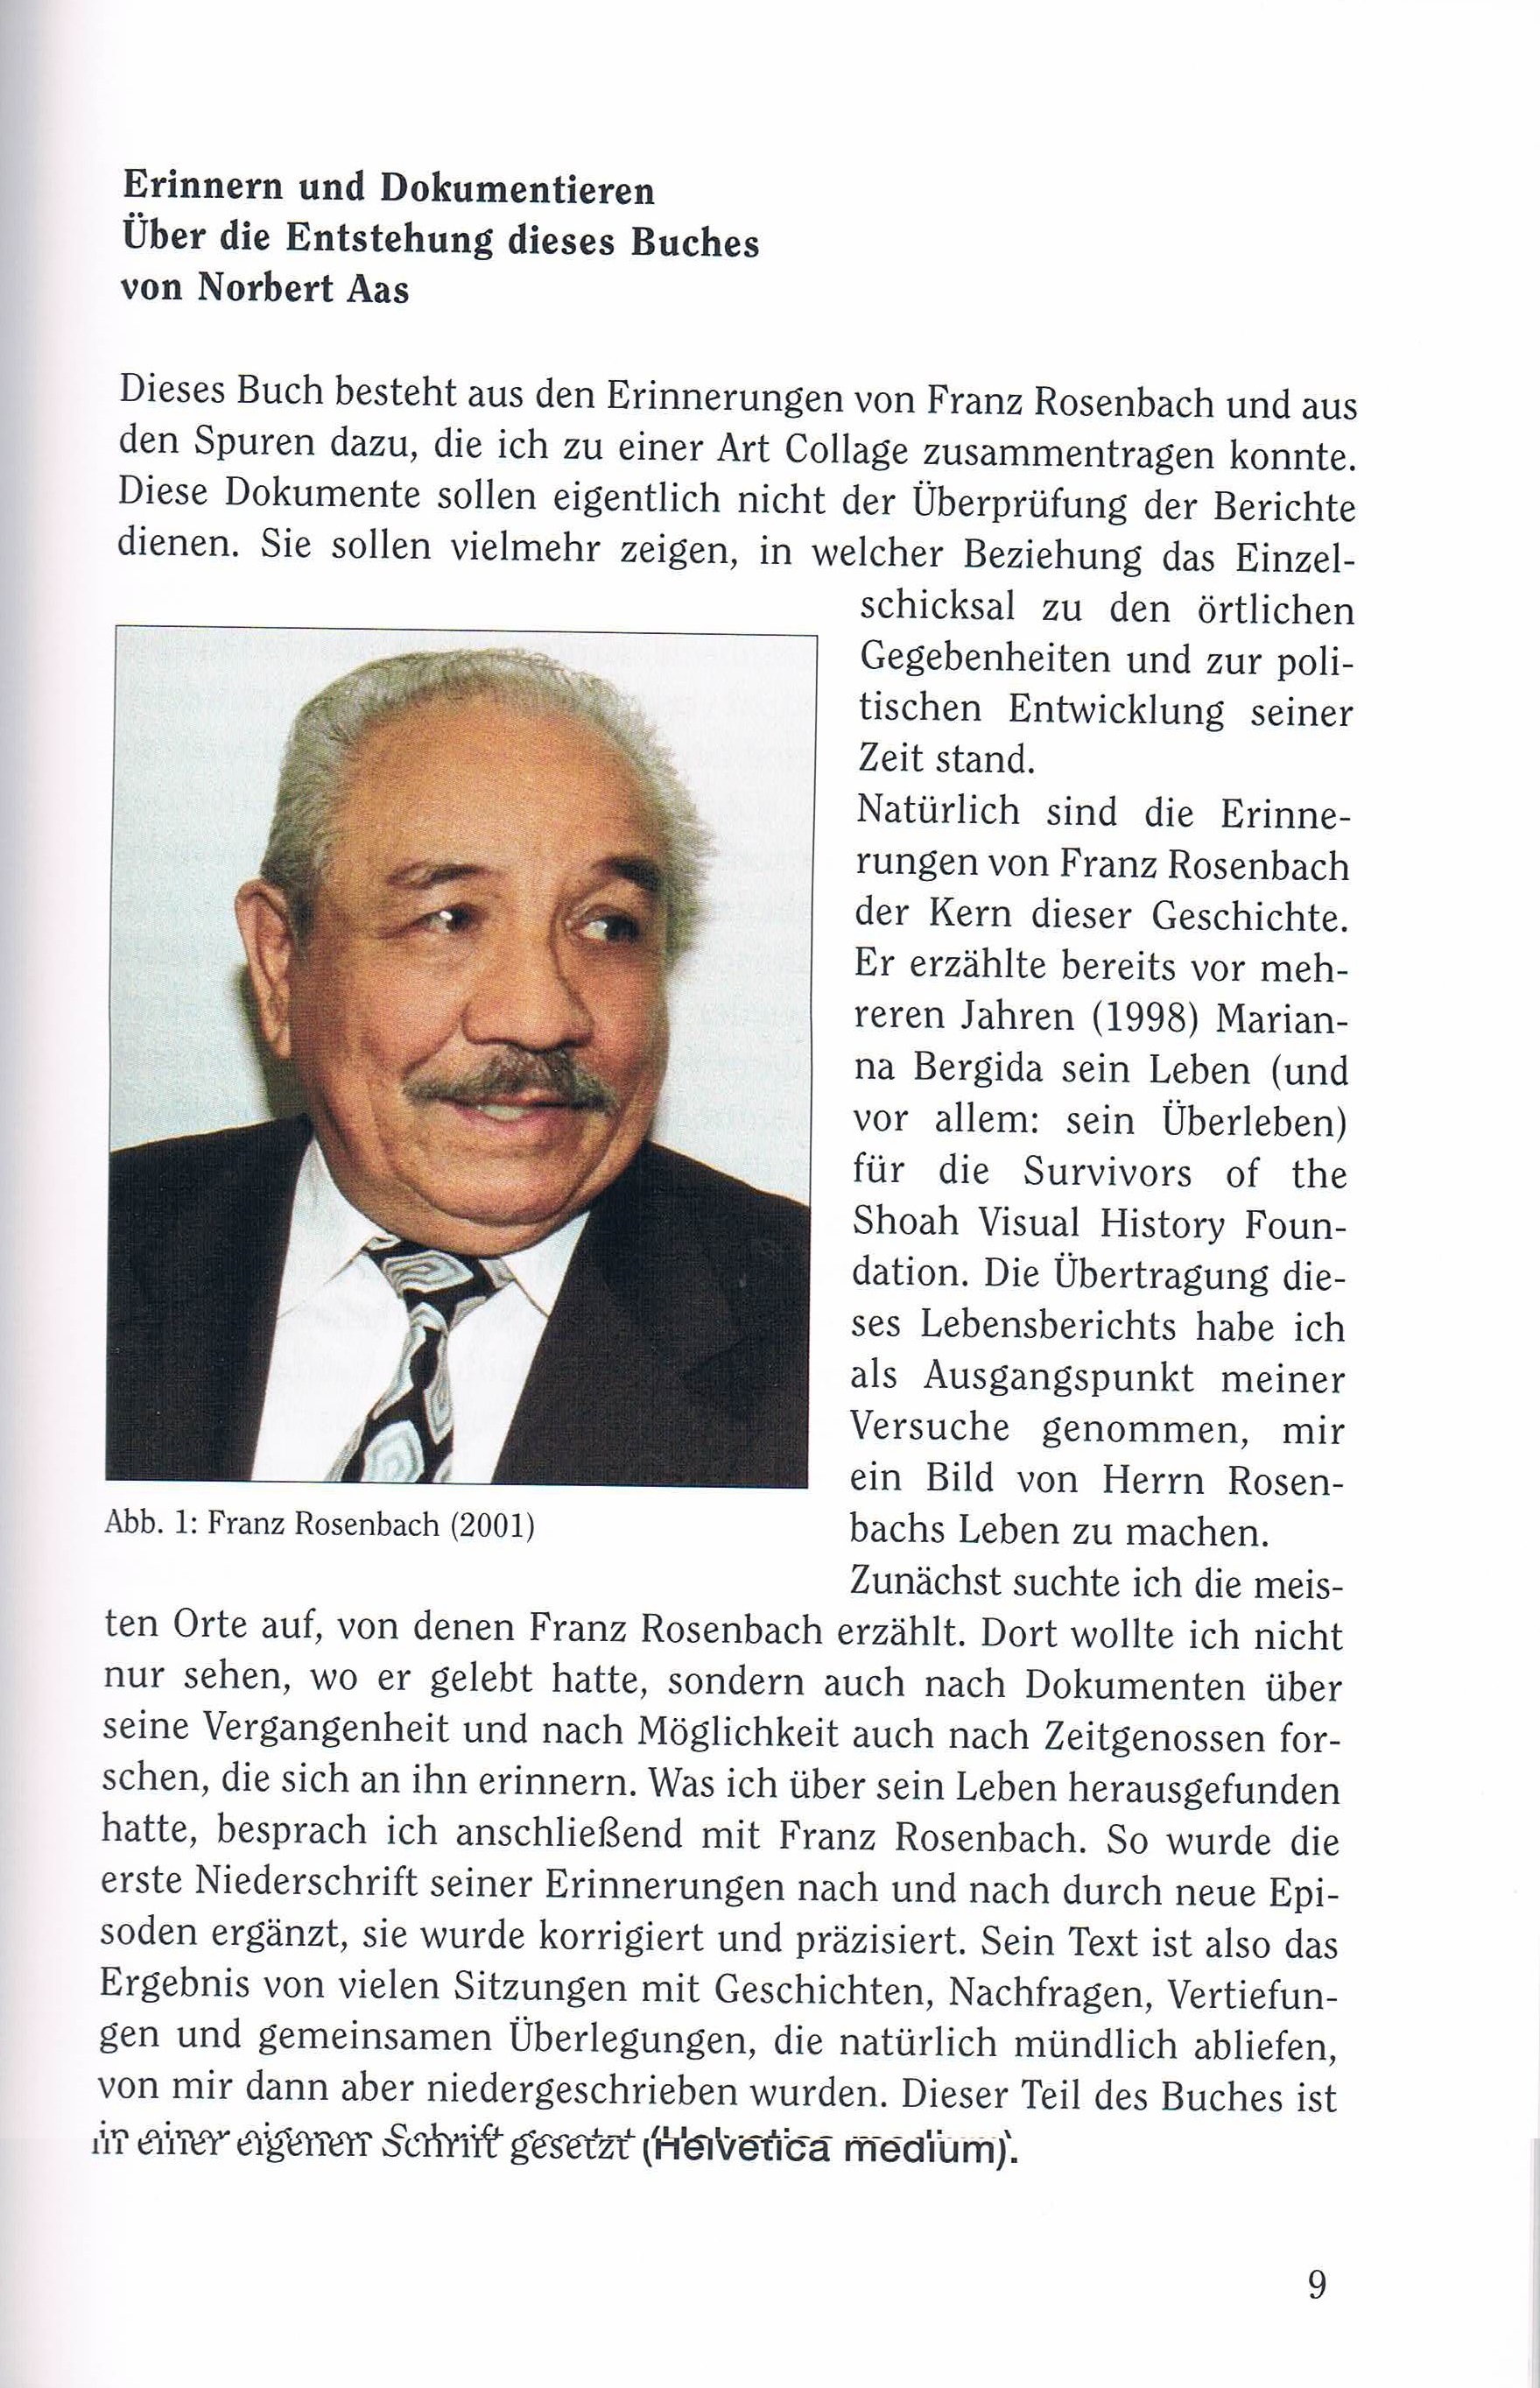 Ein Vorwort von Norbert Aas zur  Entstehung der Biographie von Franz Rosenbach 